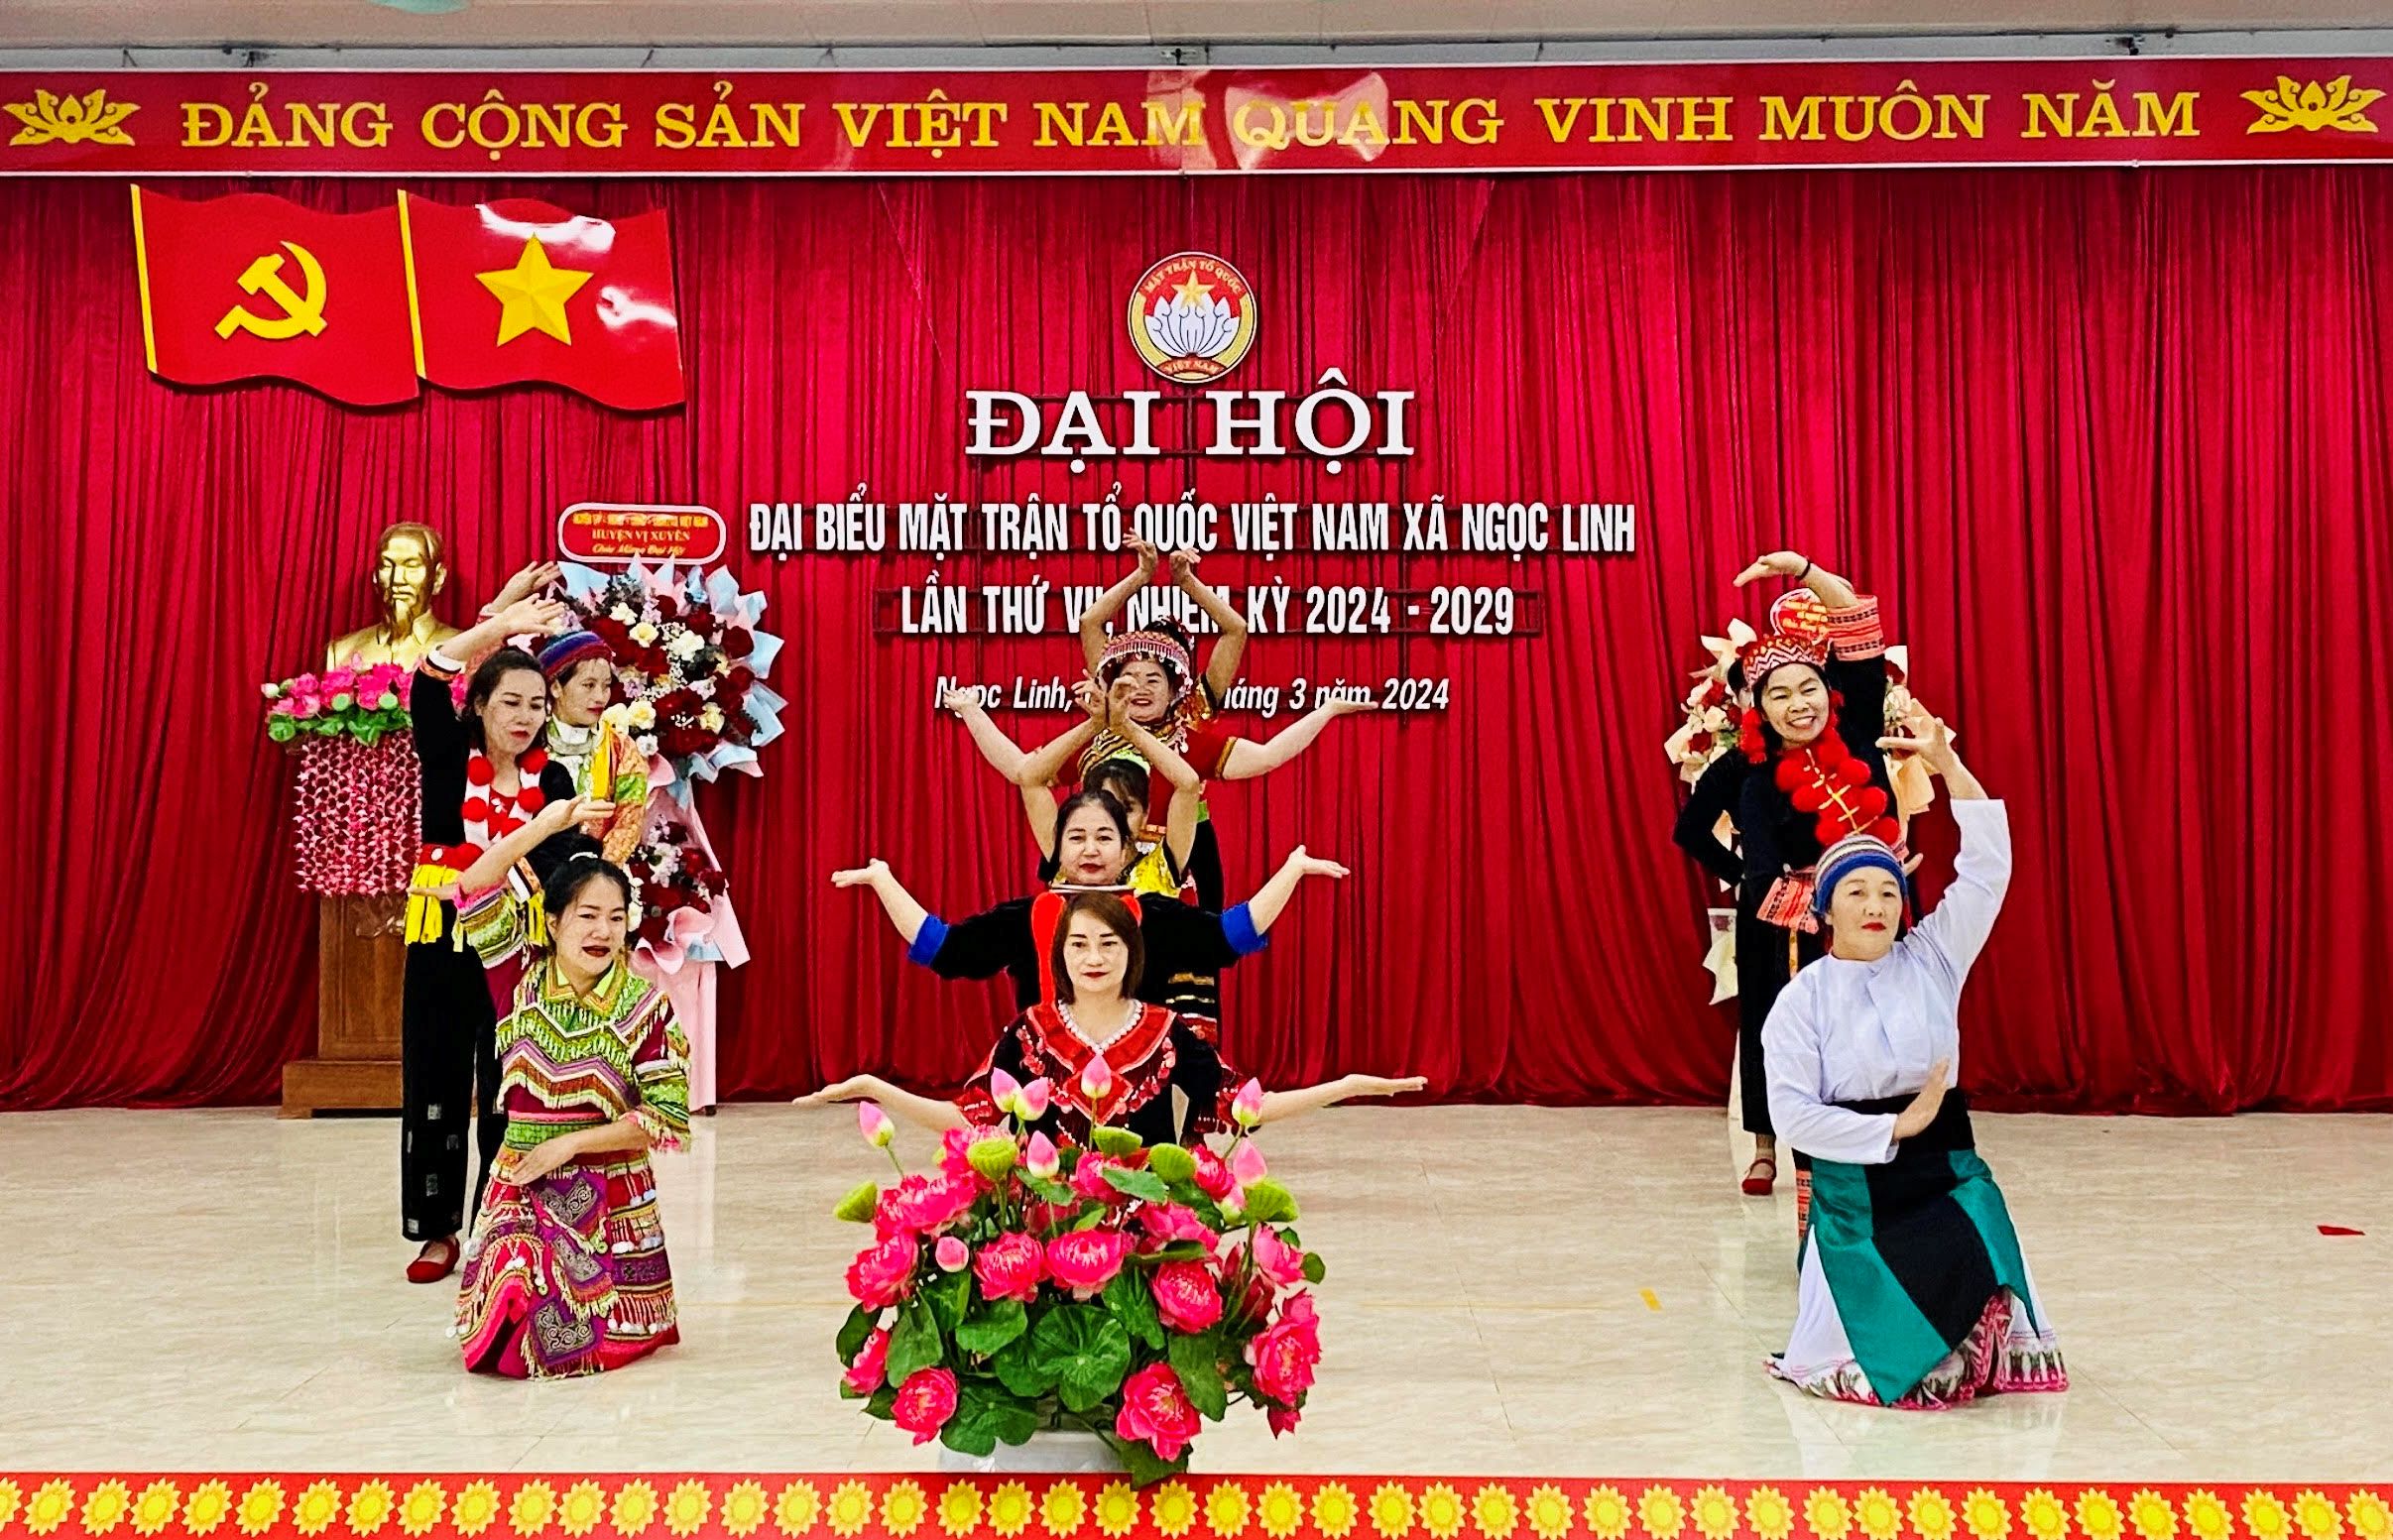 Đại hội Đại biểu MTTQ Việt Nam xã Ngọc Linh lần thứ VII, nhiệm kỳ 2024 – 2029